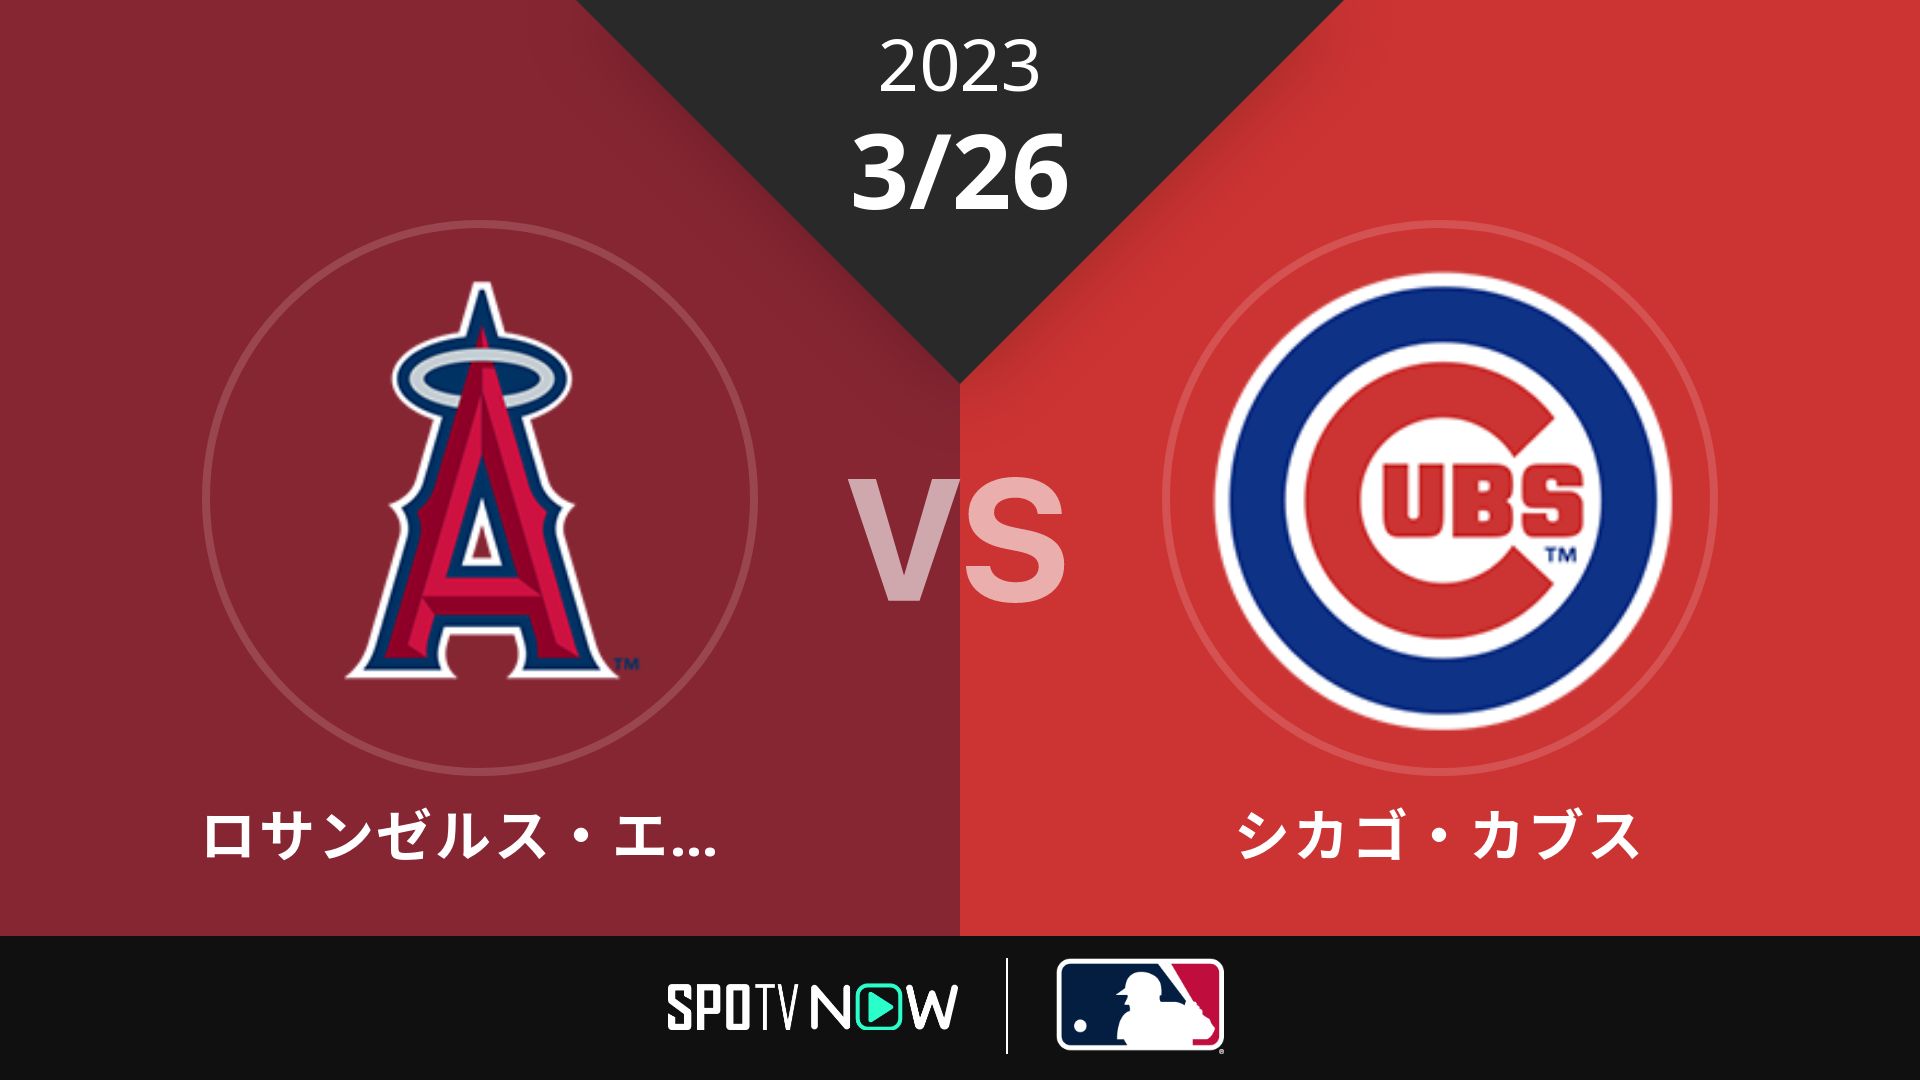 2023/3/26 エンゼルス vs カブス [MLB]